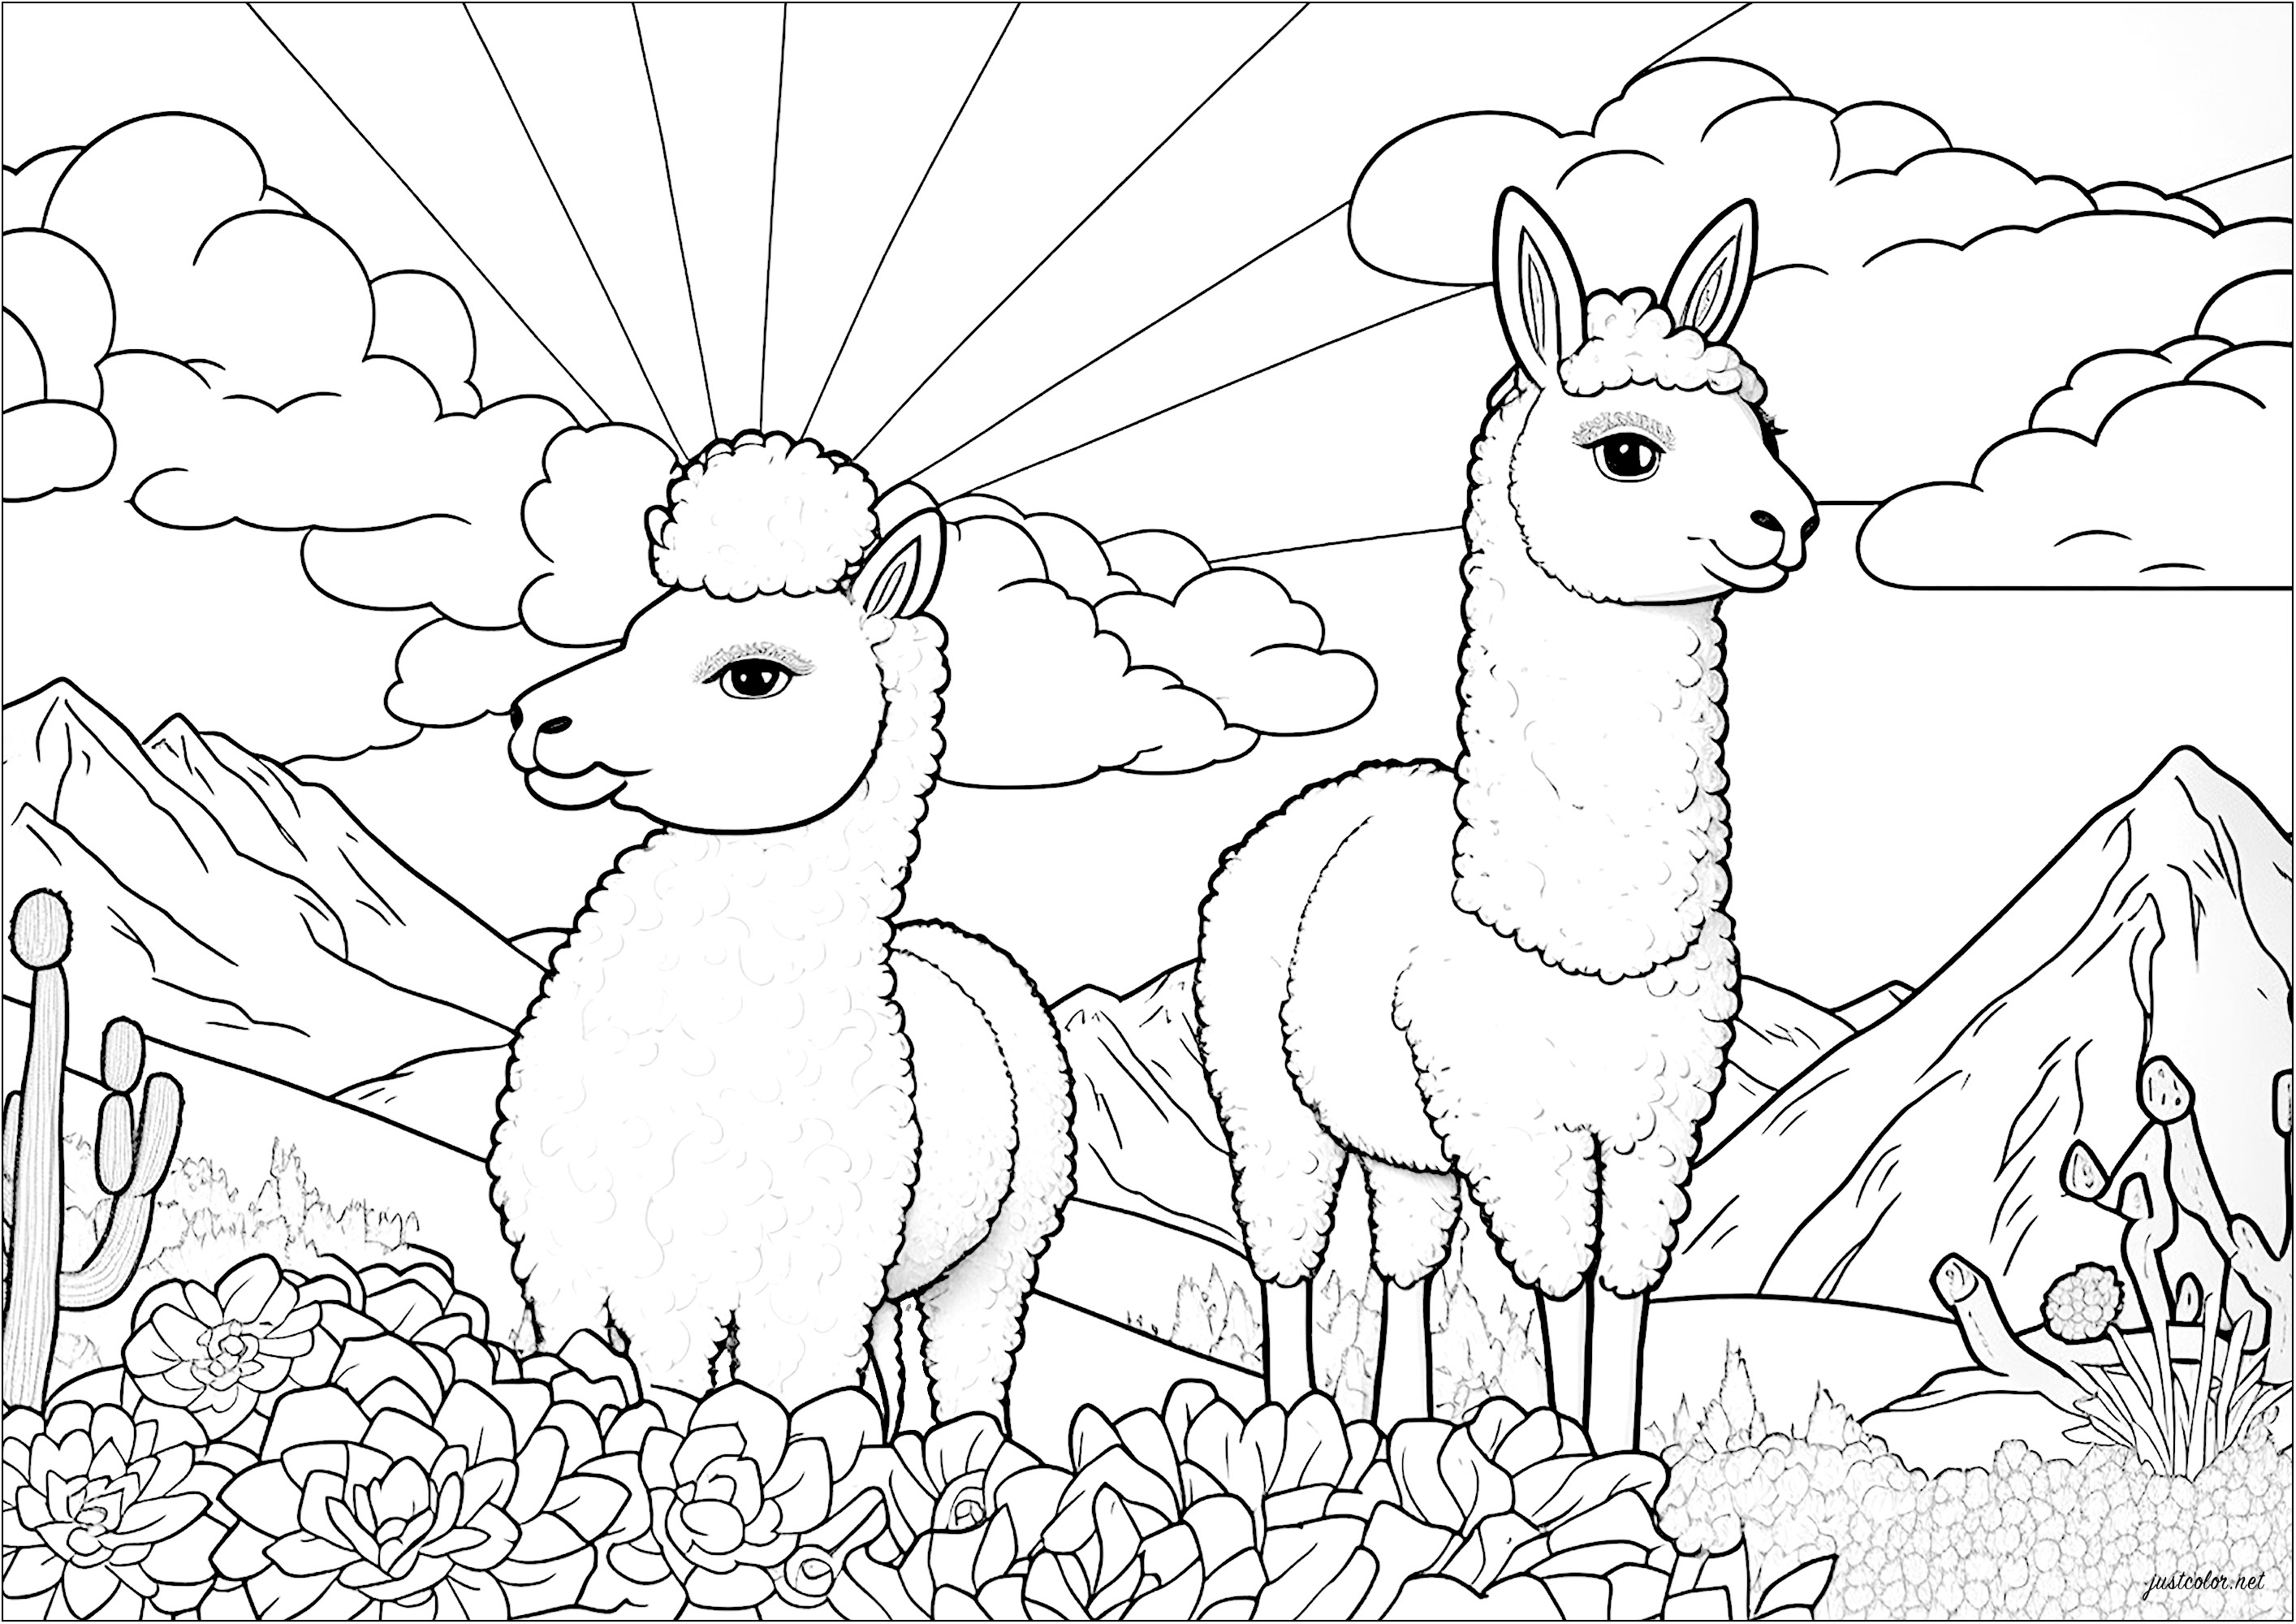 Färbung von zwei Lamas in einem Blumenfeld. Diese beiden Lamas schauen sich um, als ob sie jeden Moment genießen würden. Diese Malvorlage wird all jene begeistern, die sich in eine ruhigere, sanftere Welt zurückziehen wollen.